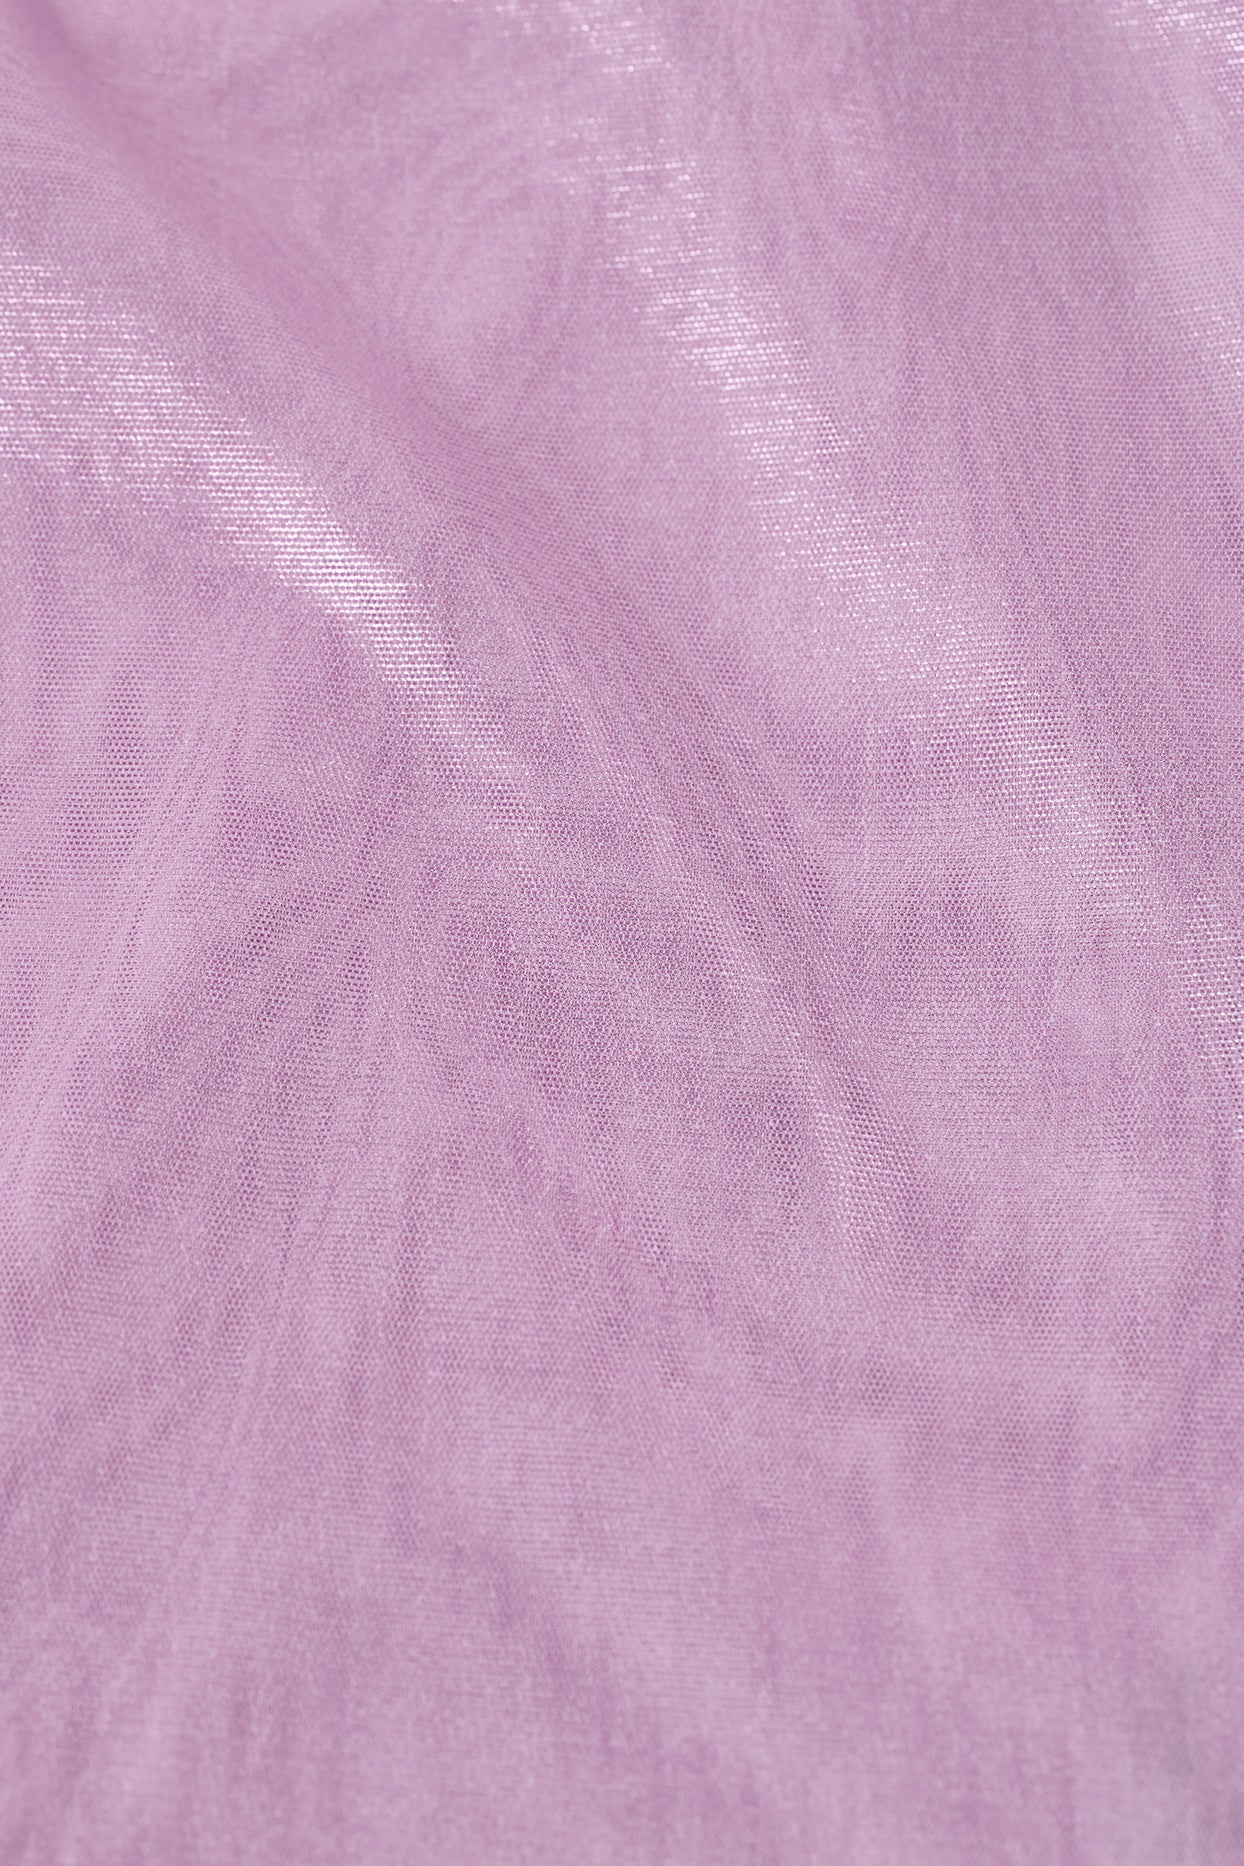 Haut froncé métallisé à col haut en rose violet